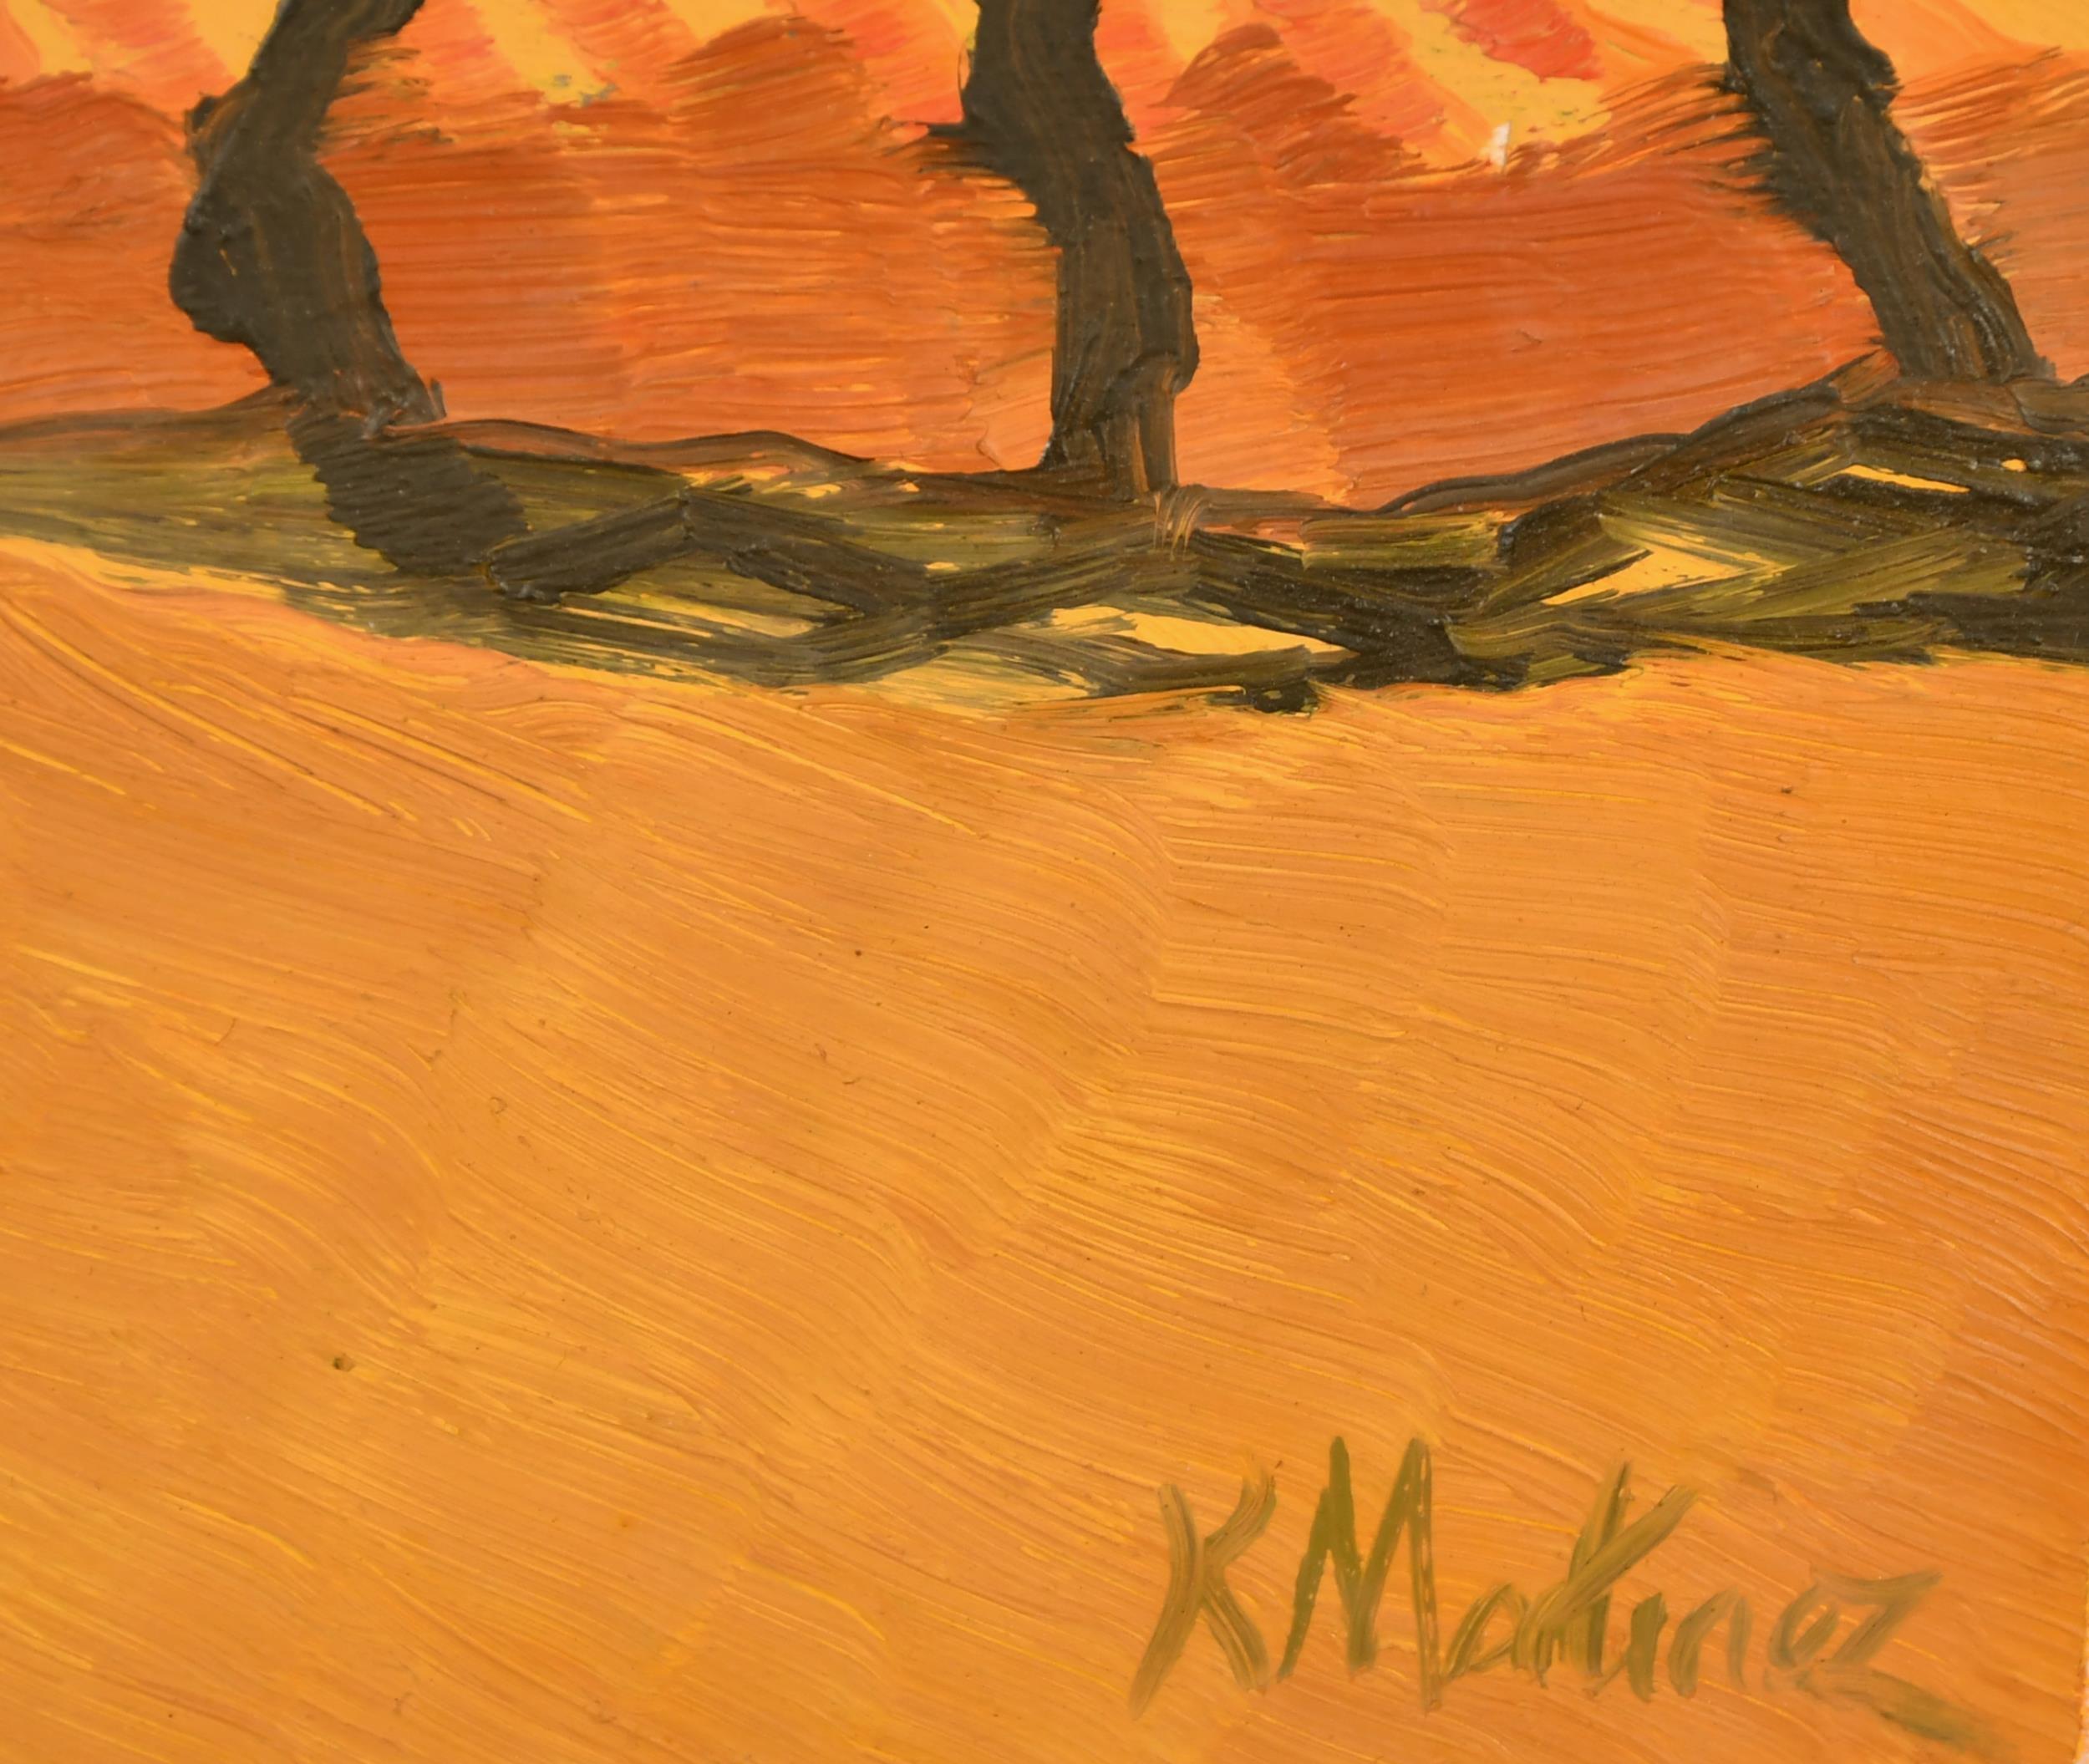 Magnifique huile sur carton des années 1950 représentant le Monte Ontanteto, en Toscane, au coucher du soleil, par Raymond Martinez.

L'œuvre bénéficie d'une excellente provenance, puisqu'elle a été vendue à l'origine par la célèbre Lefevre Gallery,